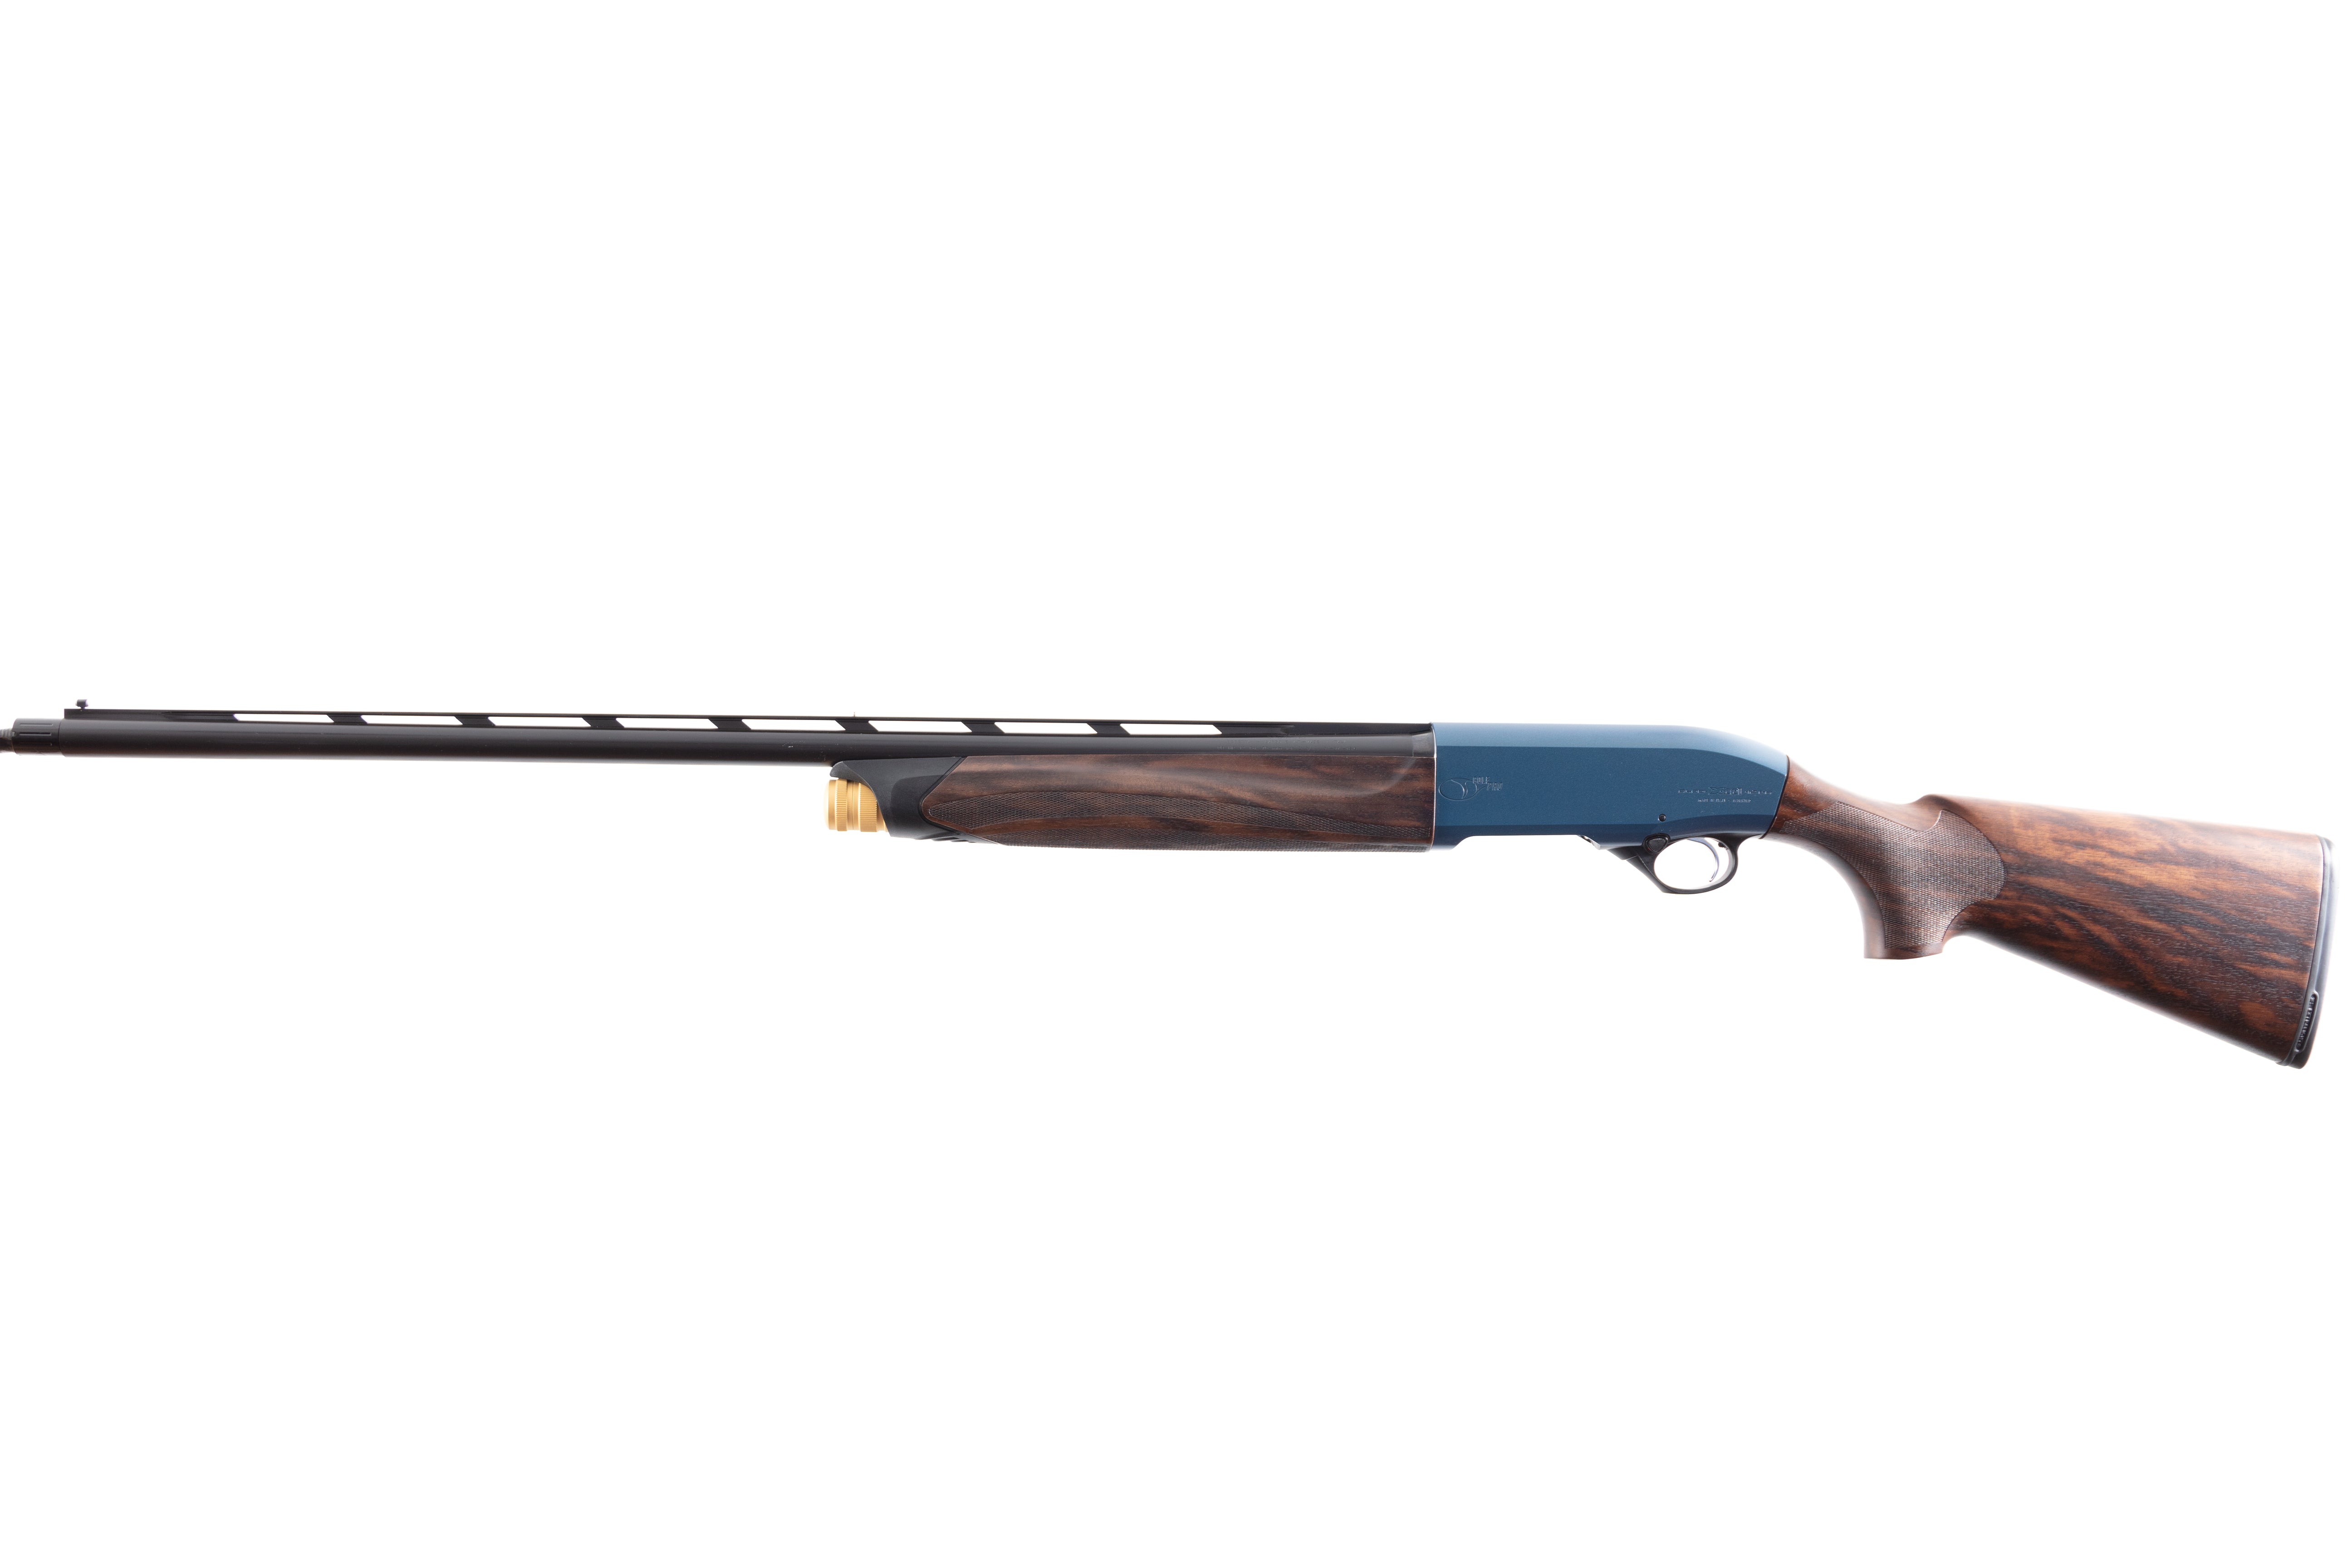 TSK - The Fully Adjustable Stock - Cole Fine Guns & Gunsmithing